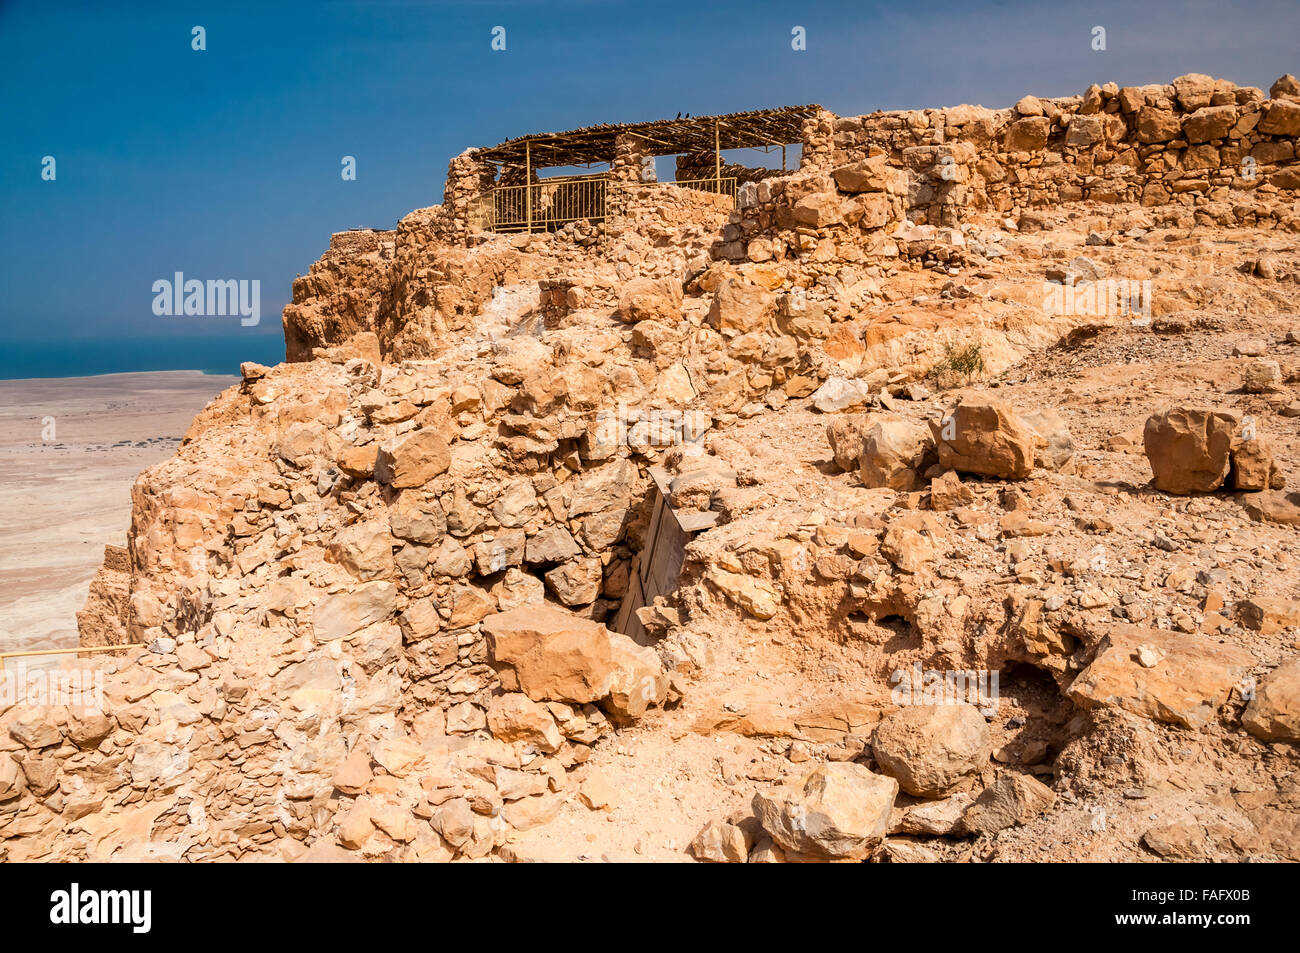 Masada - antica fortezza nel sud di Israele, sul bordo orientale del Deserto della Giudea affacciata sul Mar Morto. Dopo la F Foto Stock